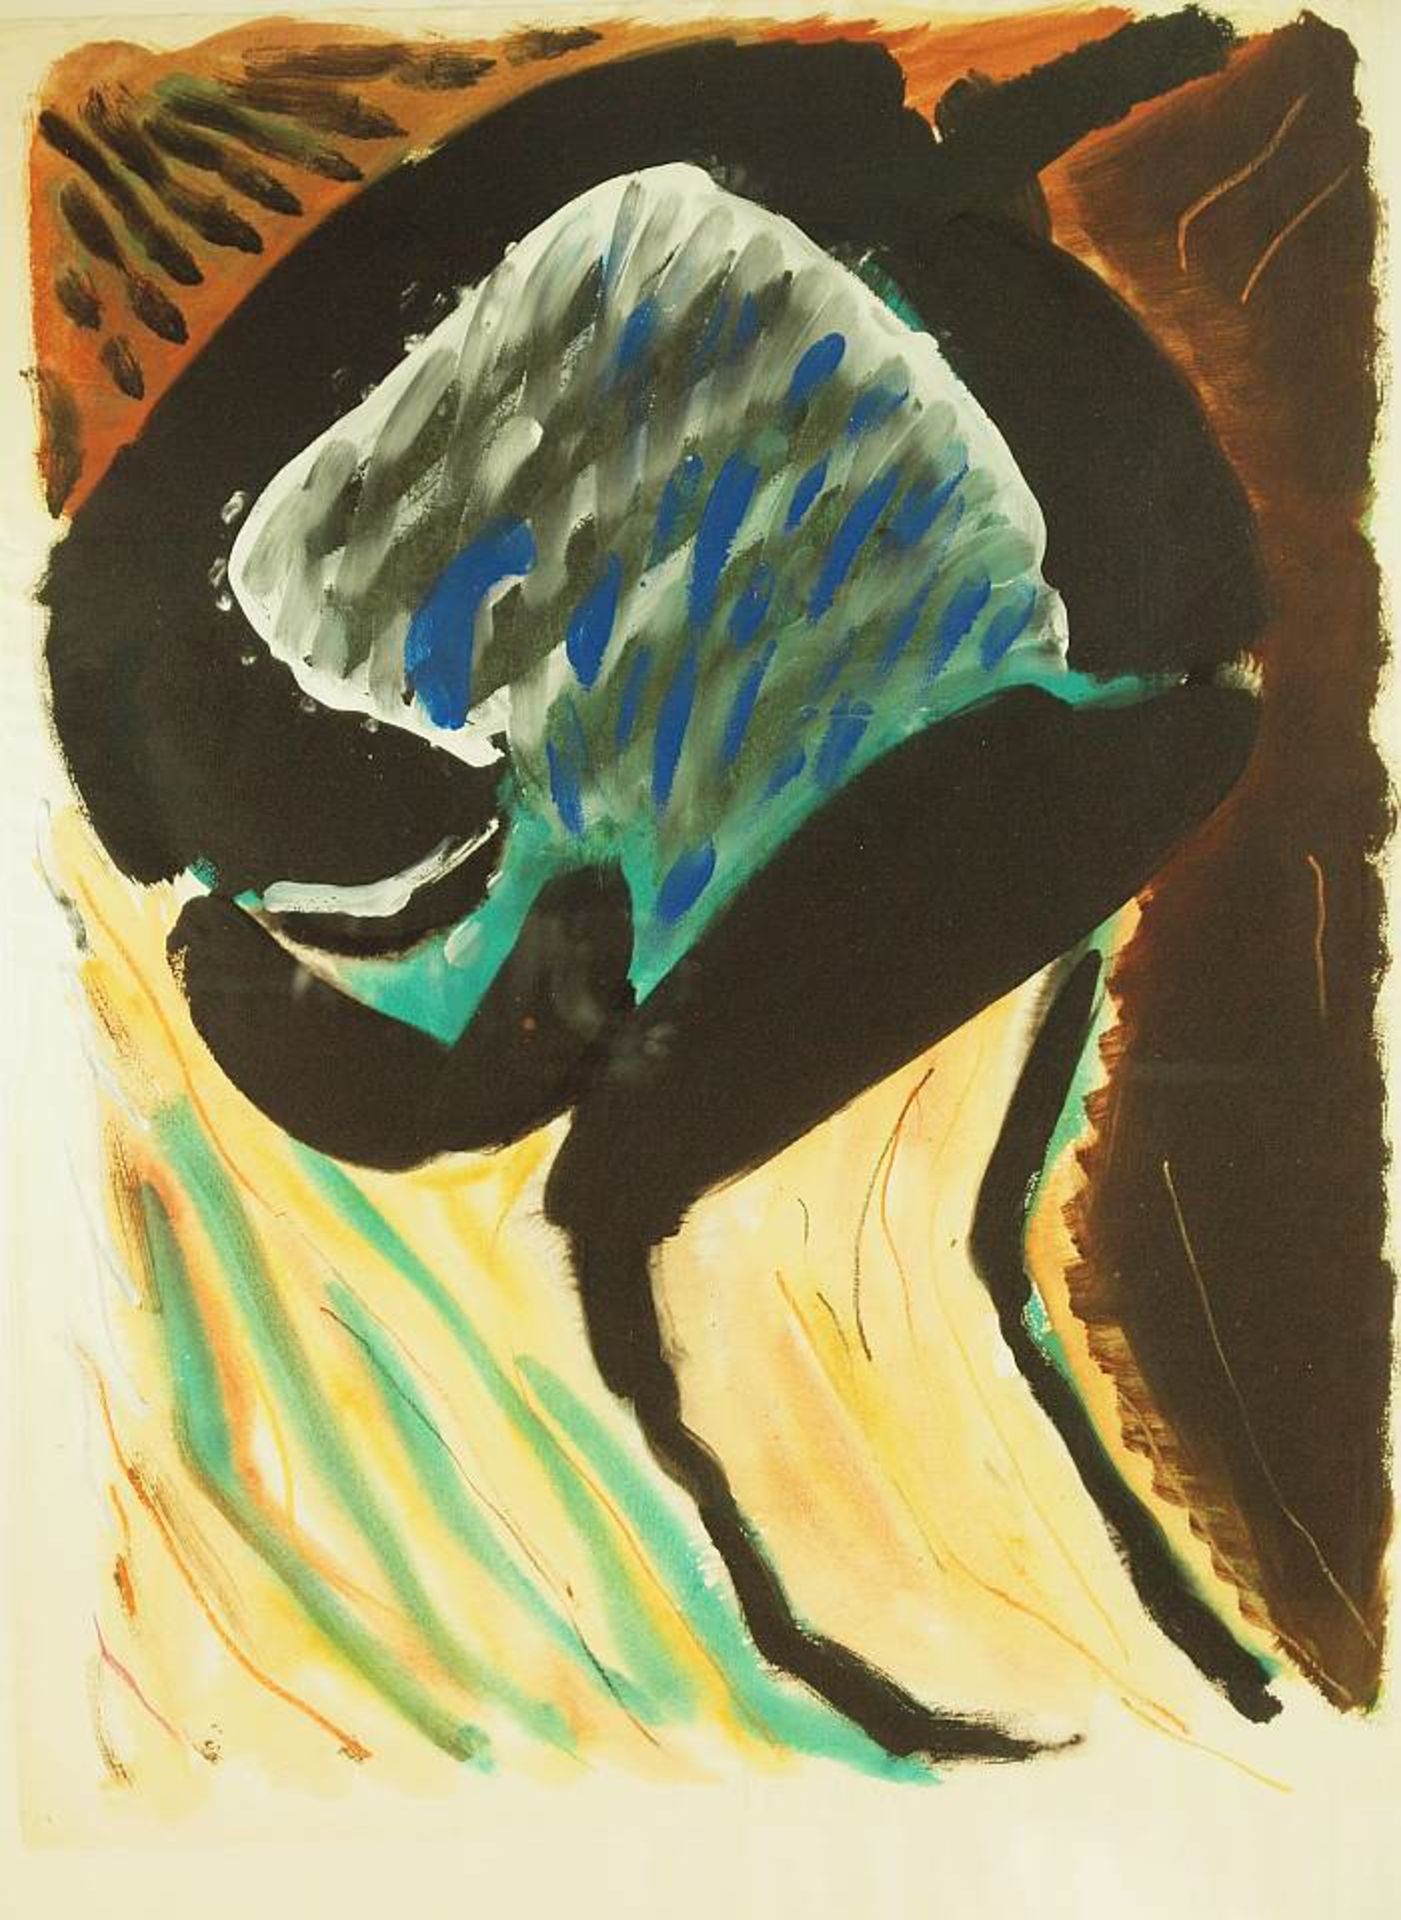 SCHLÖSSER, Peter.SCHLÖSSER, Peter. 1948 - ?. Moderne farbenfrohe abstrakte Komposition, Aquarell /